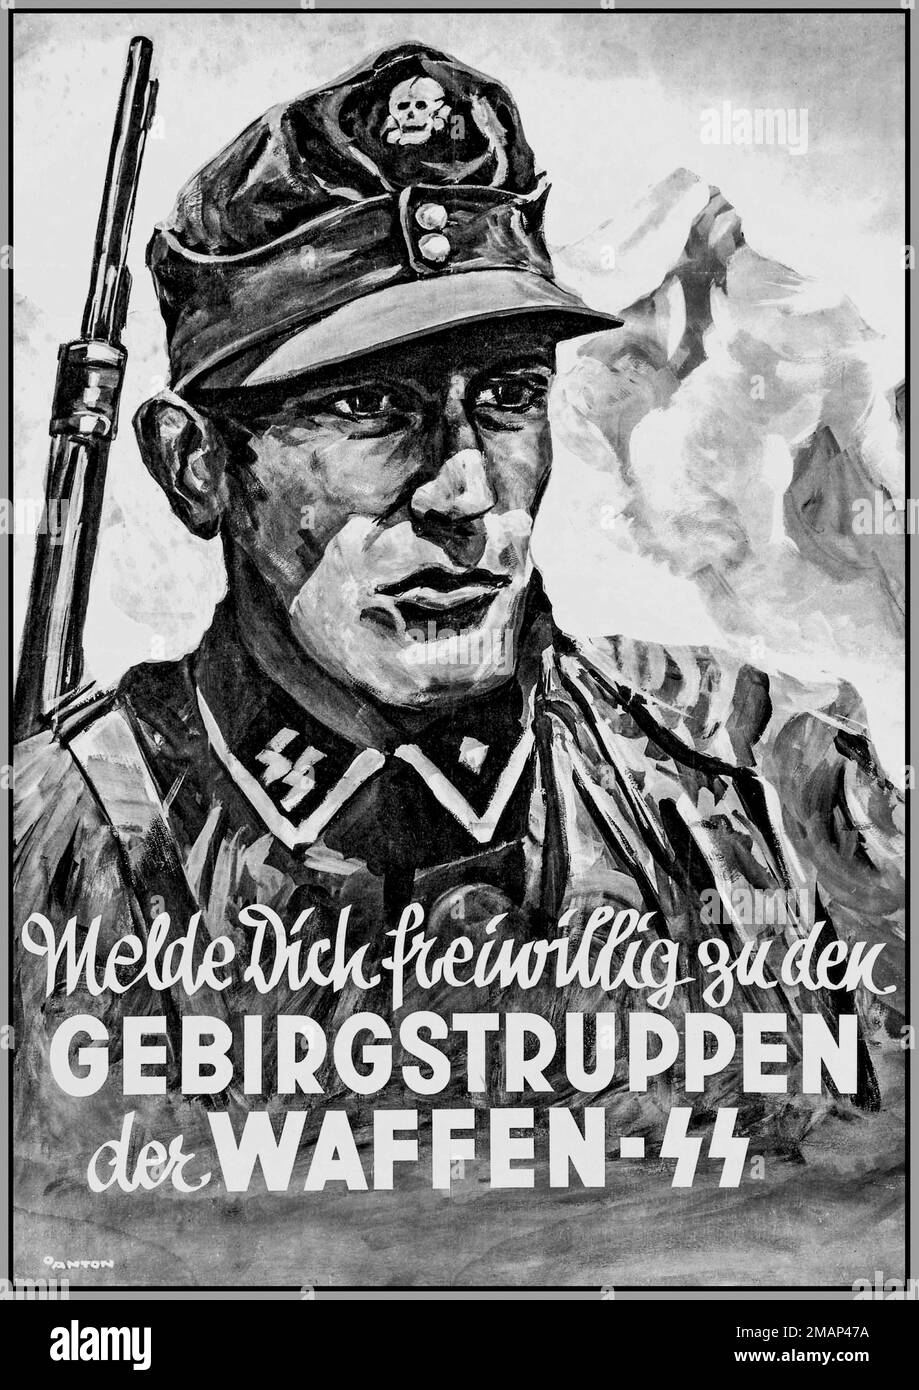 WAFFEN SS 1941 Nazi propaganda recruitment poster for mountain troops of the Waffen SS WW2 GEBIRGSTRUPPEN Der WAFFEN SS World War II Stock Photo